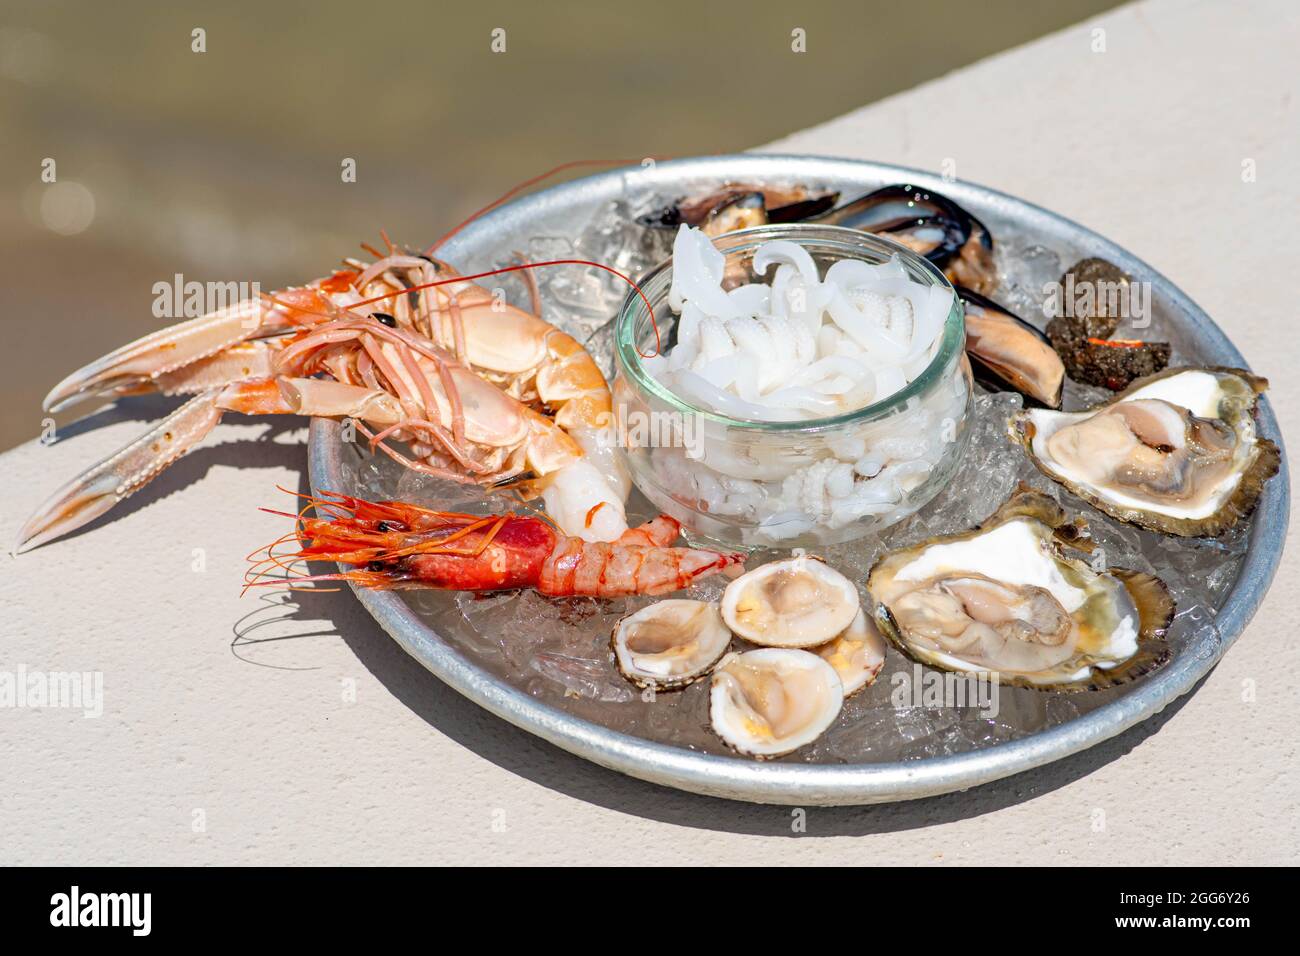 Teller mit rohen frischen Meeresfrüchten oder Lebensmitteln, verzehrfertig mit Garnelen, Garnelen, Austern, Muscheln, Muscheln, Muscheln, Tintenfische, Nahaufnahme Stockfoto